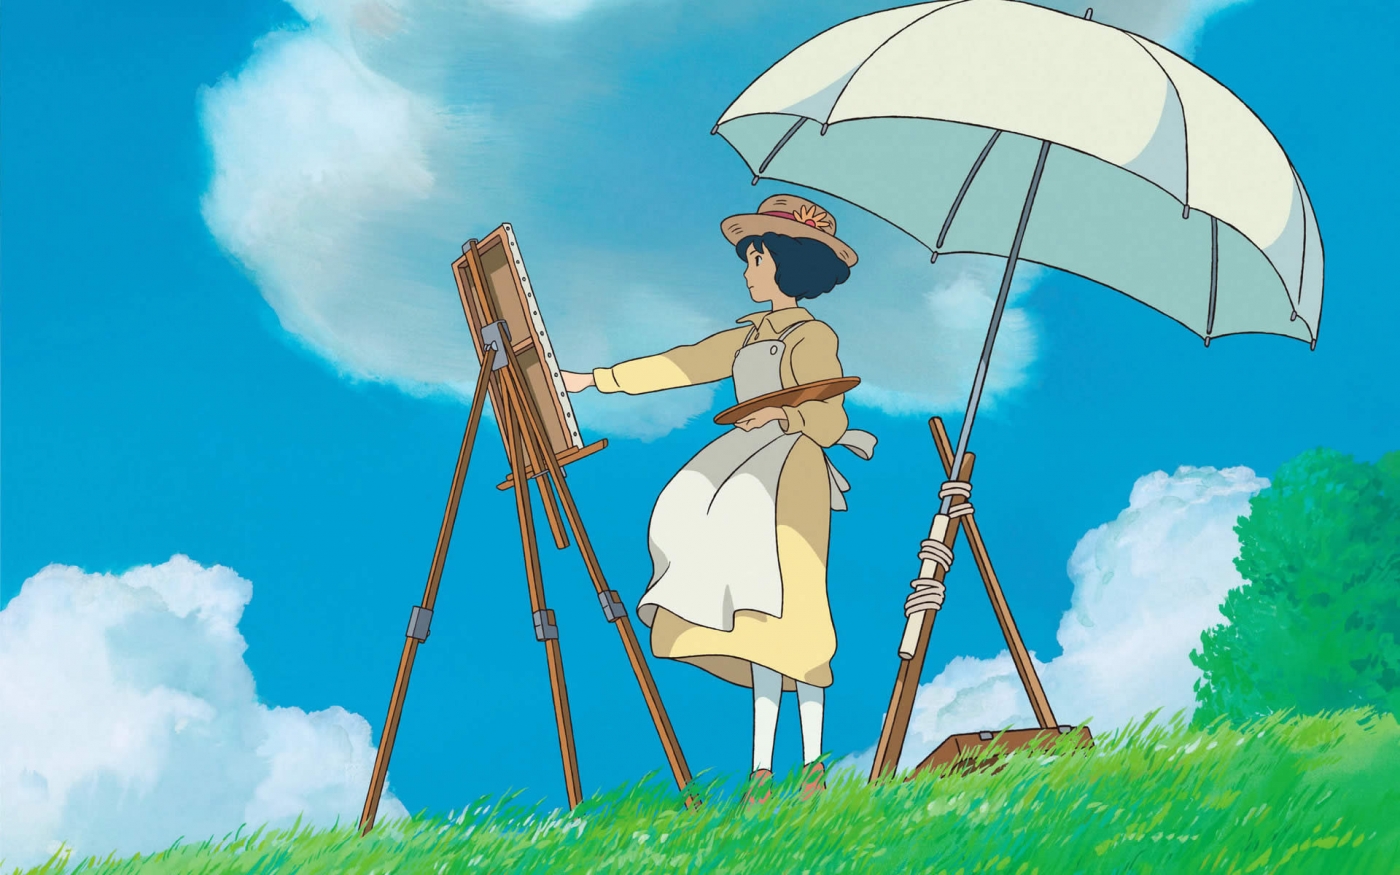 宫崎骏电影里漂亮的场景，原来就是他画的！